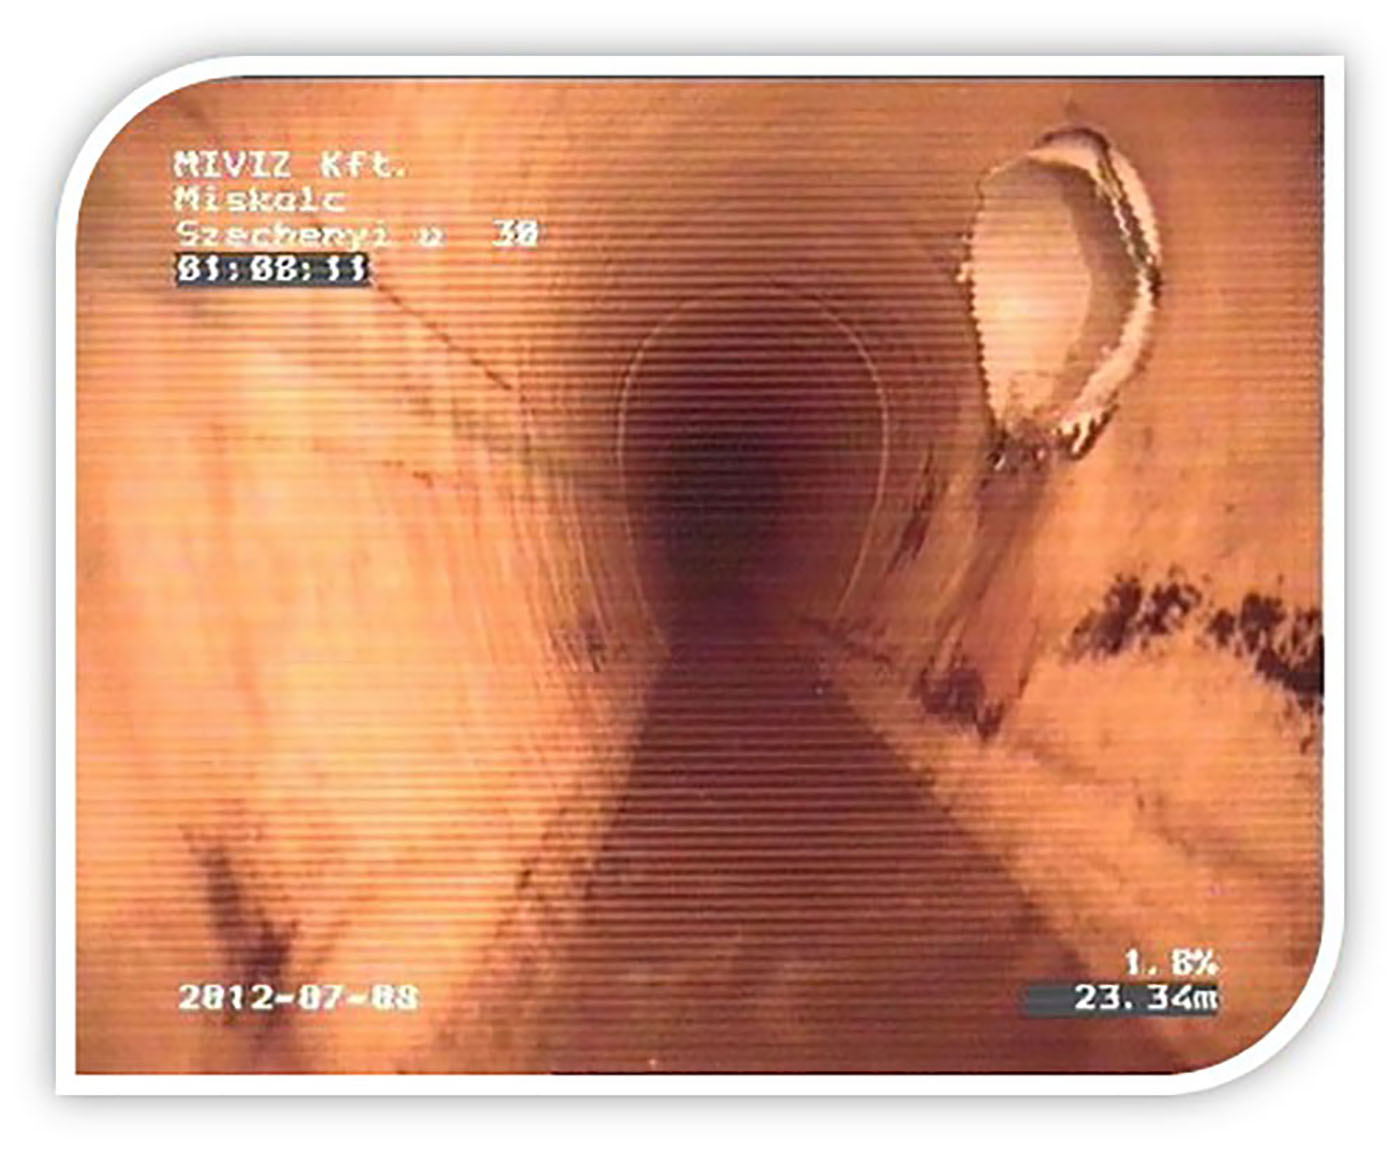 Tojás szelvényű csatorna belülről, ipari kamerás vizsgálat